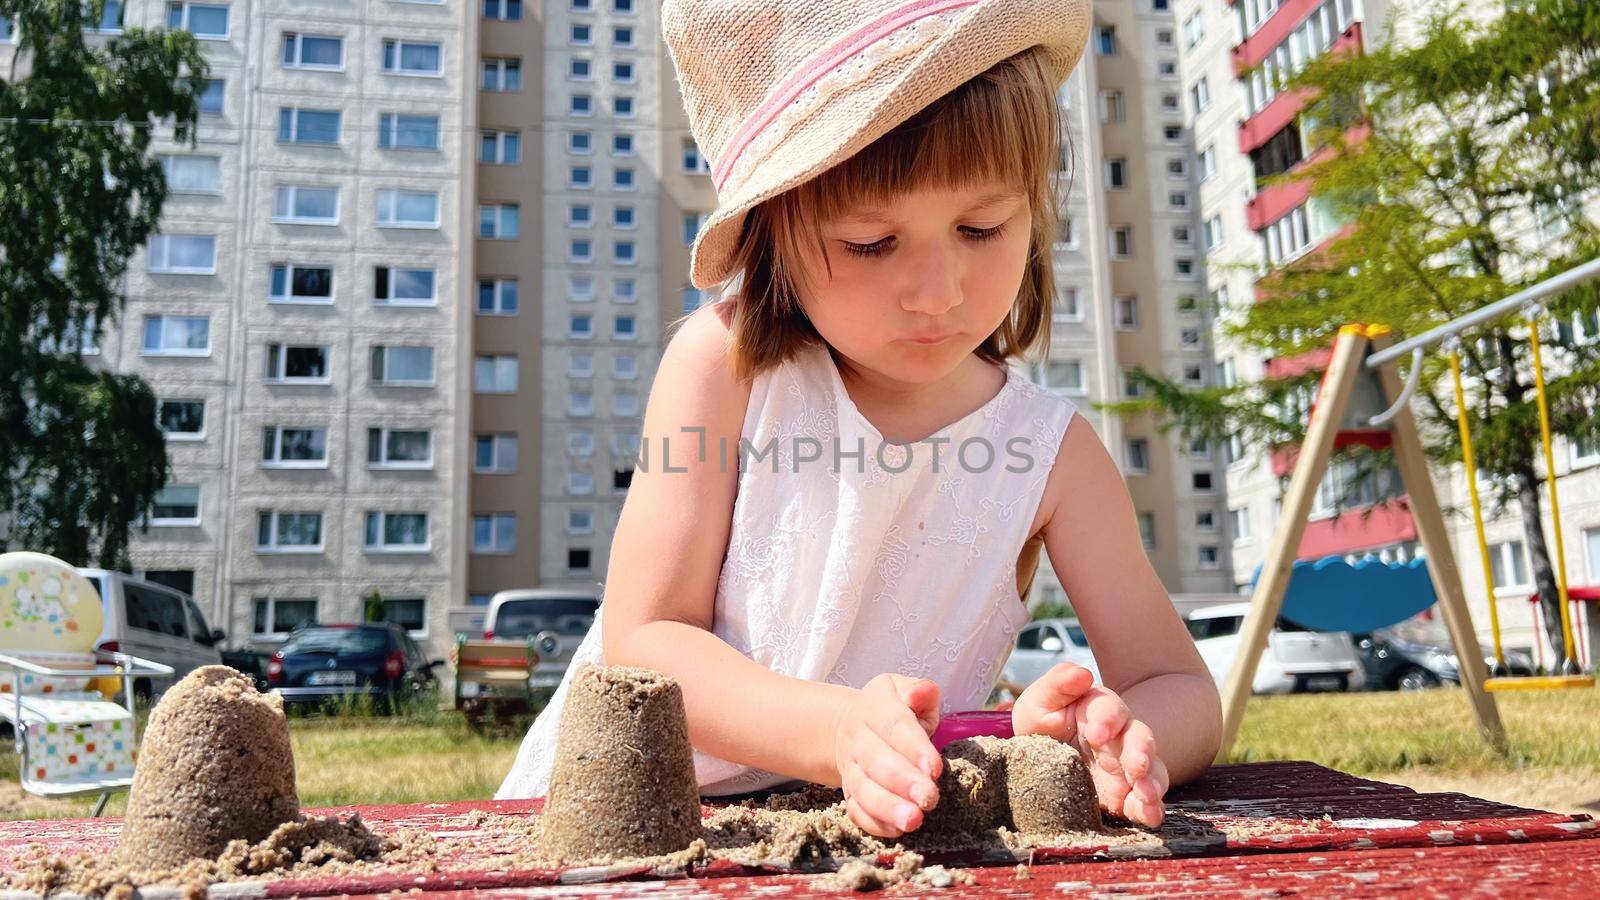 SMALL GIRL playing at playground at backyard of blocks of flats by Varaksina